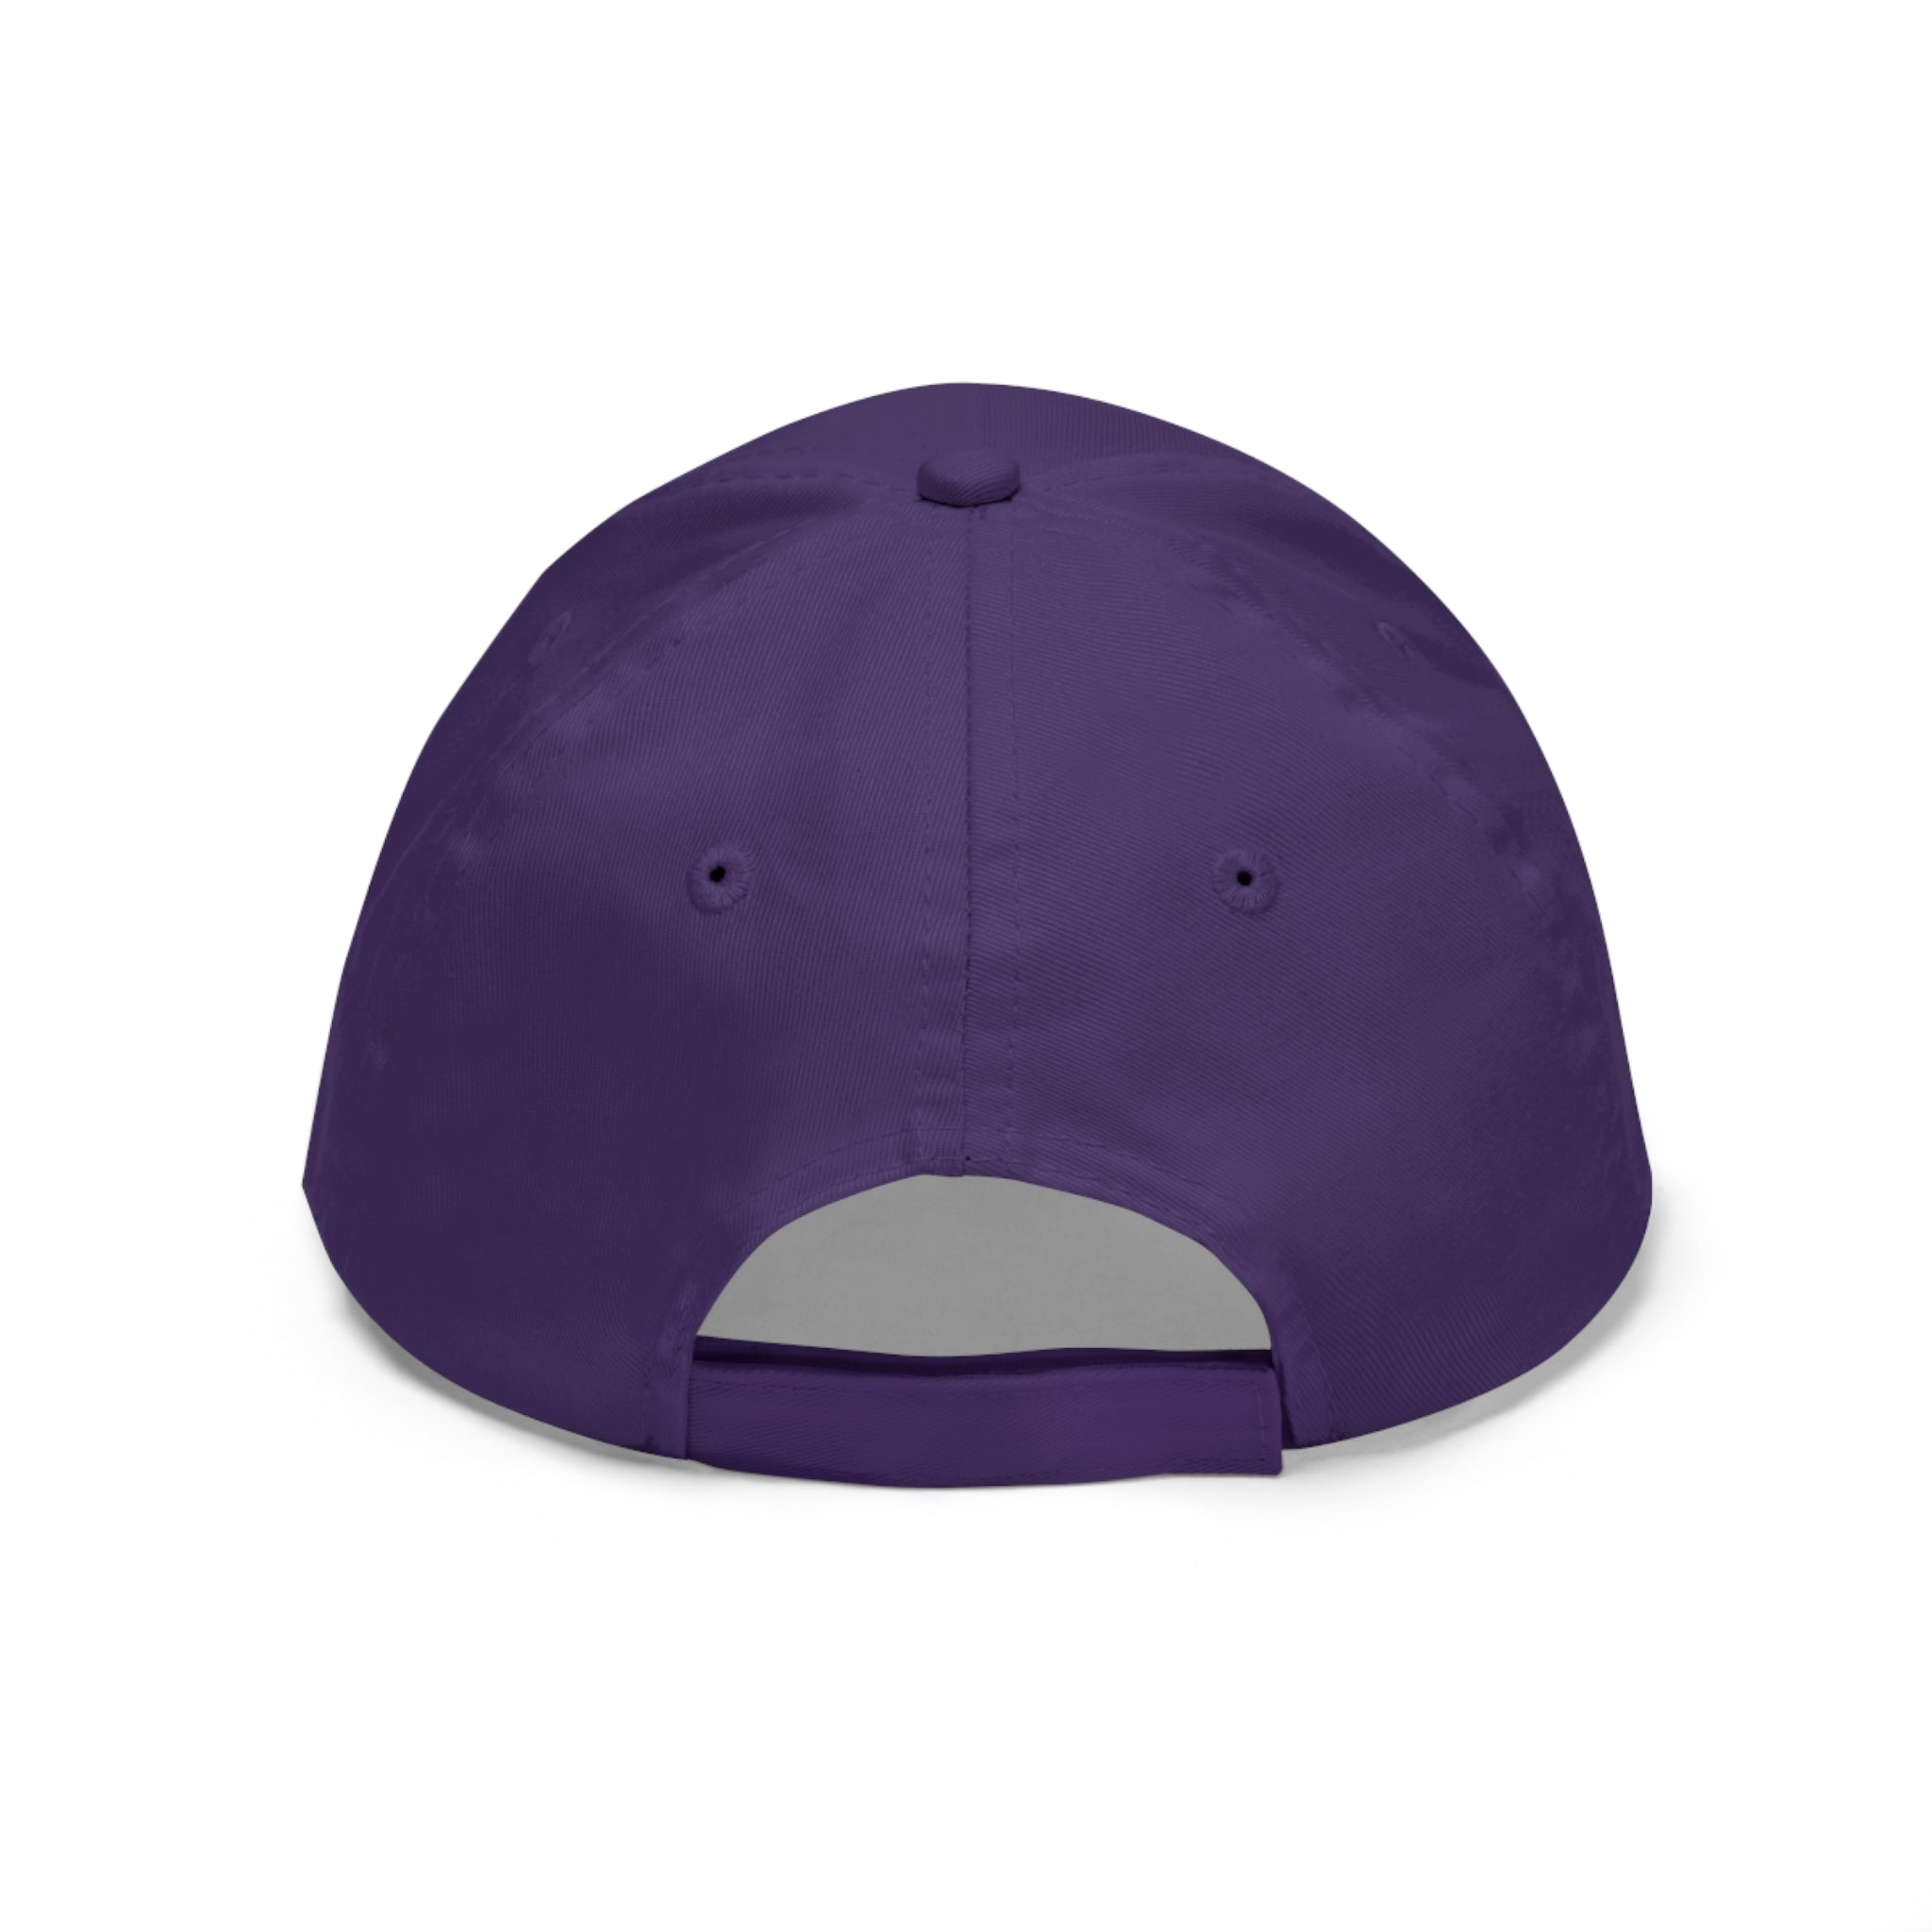 Sombrero de sarga unisex